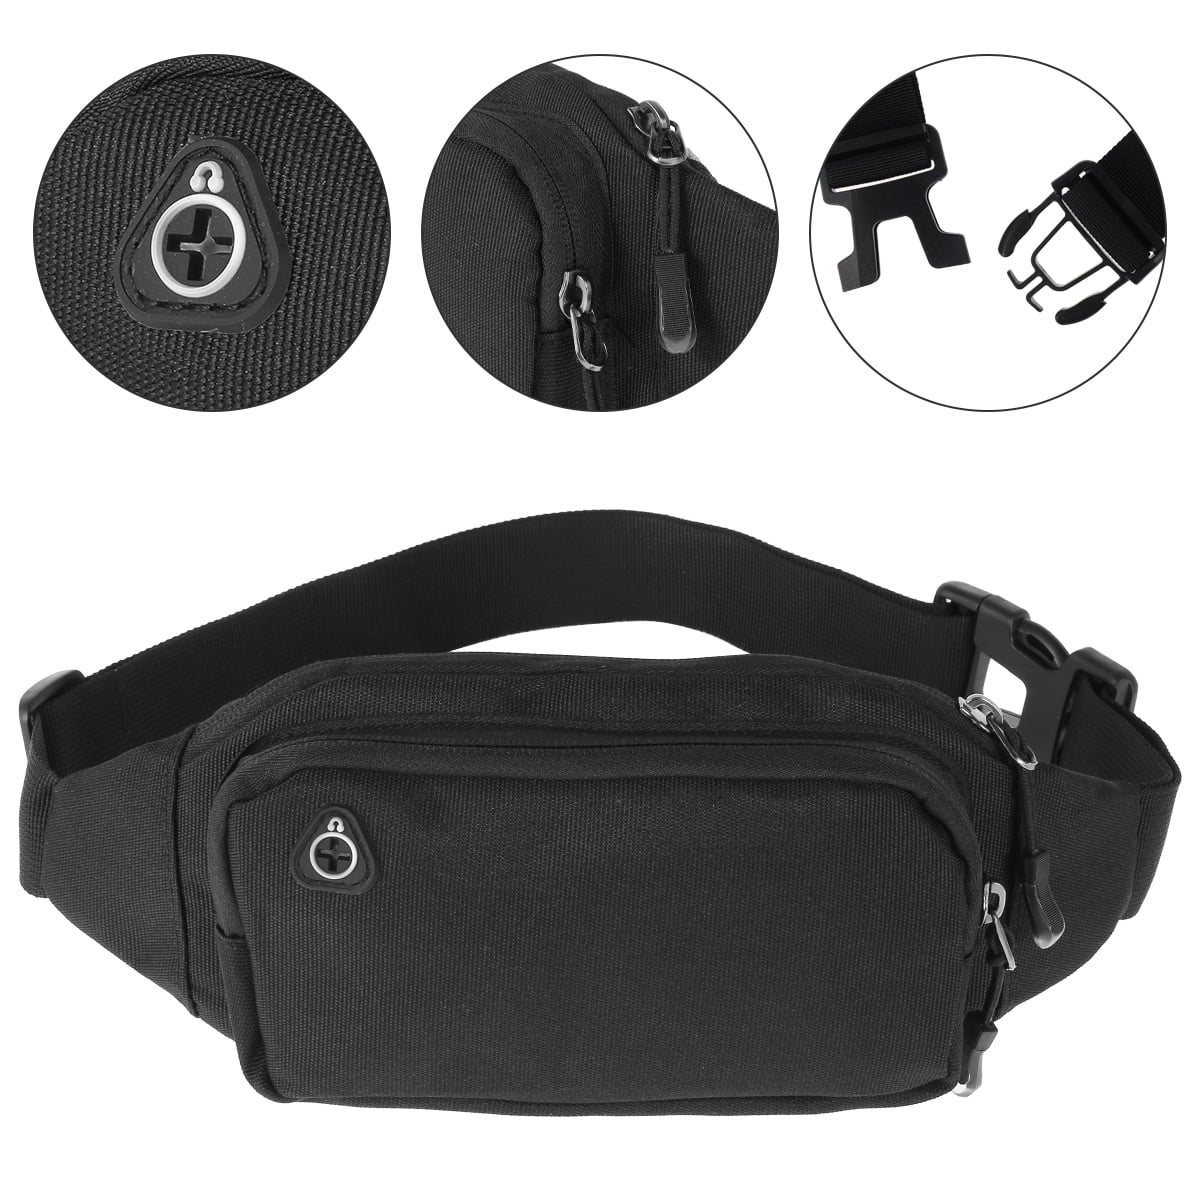 Dioche Waist Pack Adjustable Neoprene Running Waist Bag with Elastic  Waistband for Men Women,Sports Waist Packs